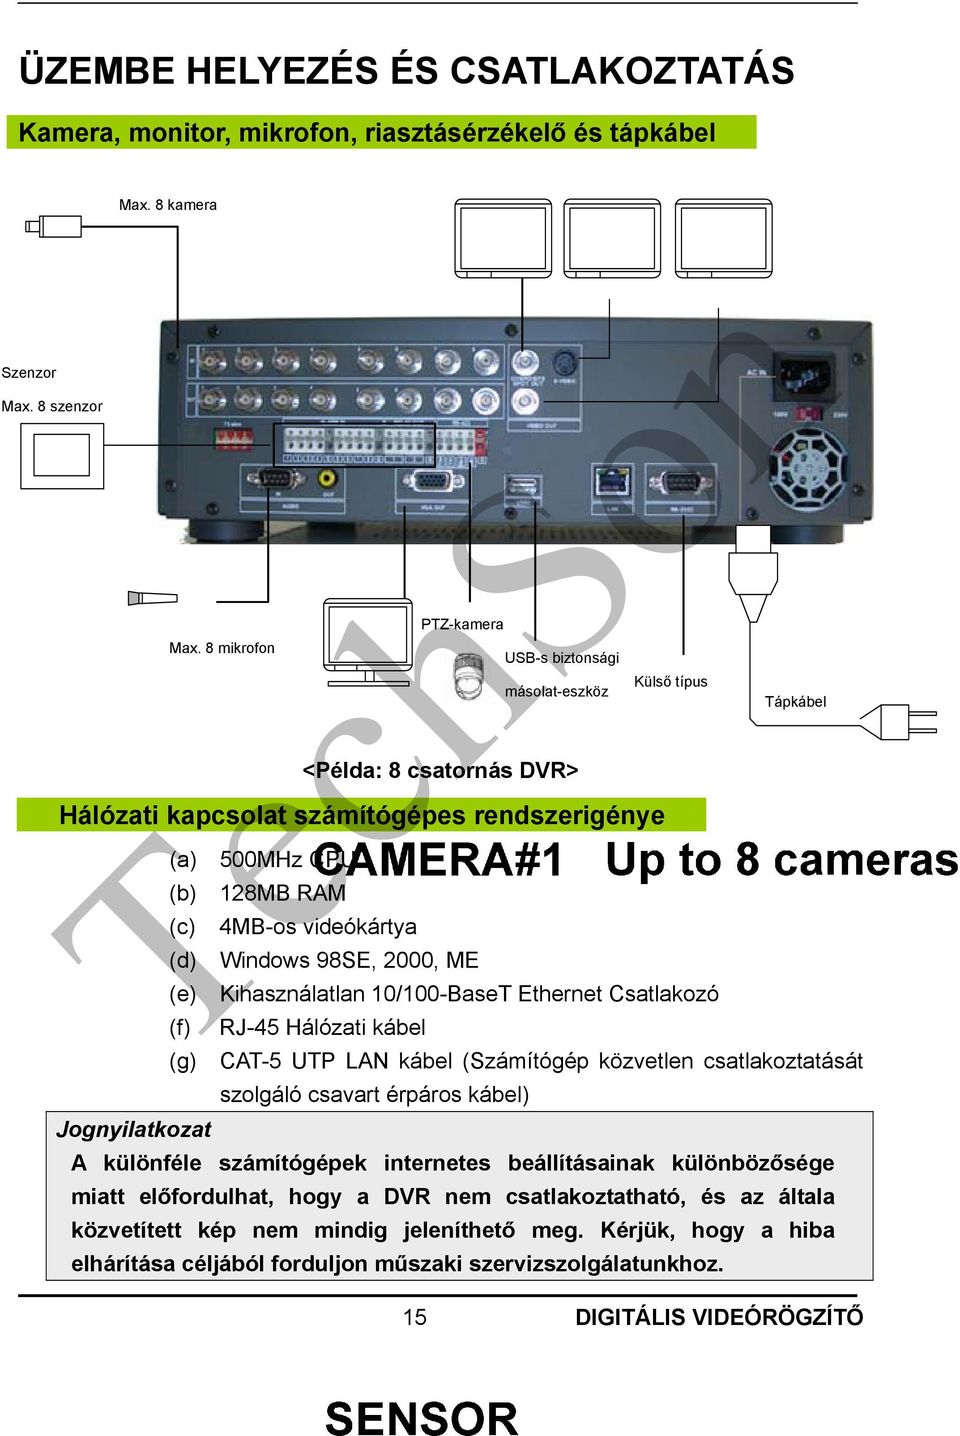 Ethernet Csatlakozó RJ-45 Hálózati kábel PTZ-kamera USB-s biztonsági másolat-eszköz Külső típus Tápkábel (g) CAT-5 UTP LAN kábel (Számítógép közvetlen csatlakoztatását szolgáló csavart érpáros kábel)